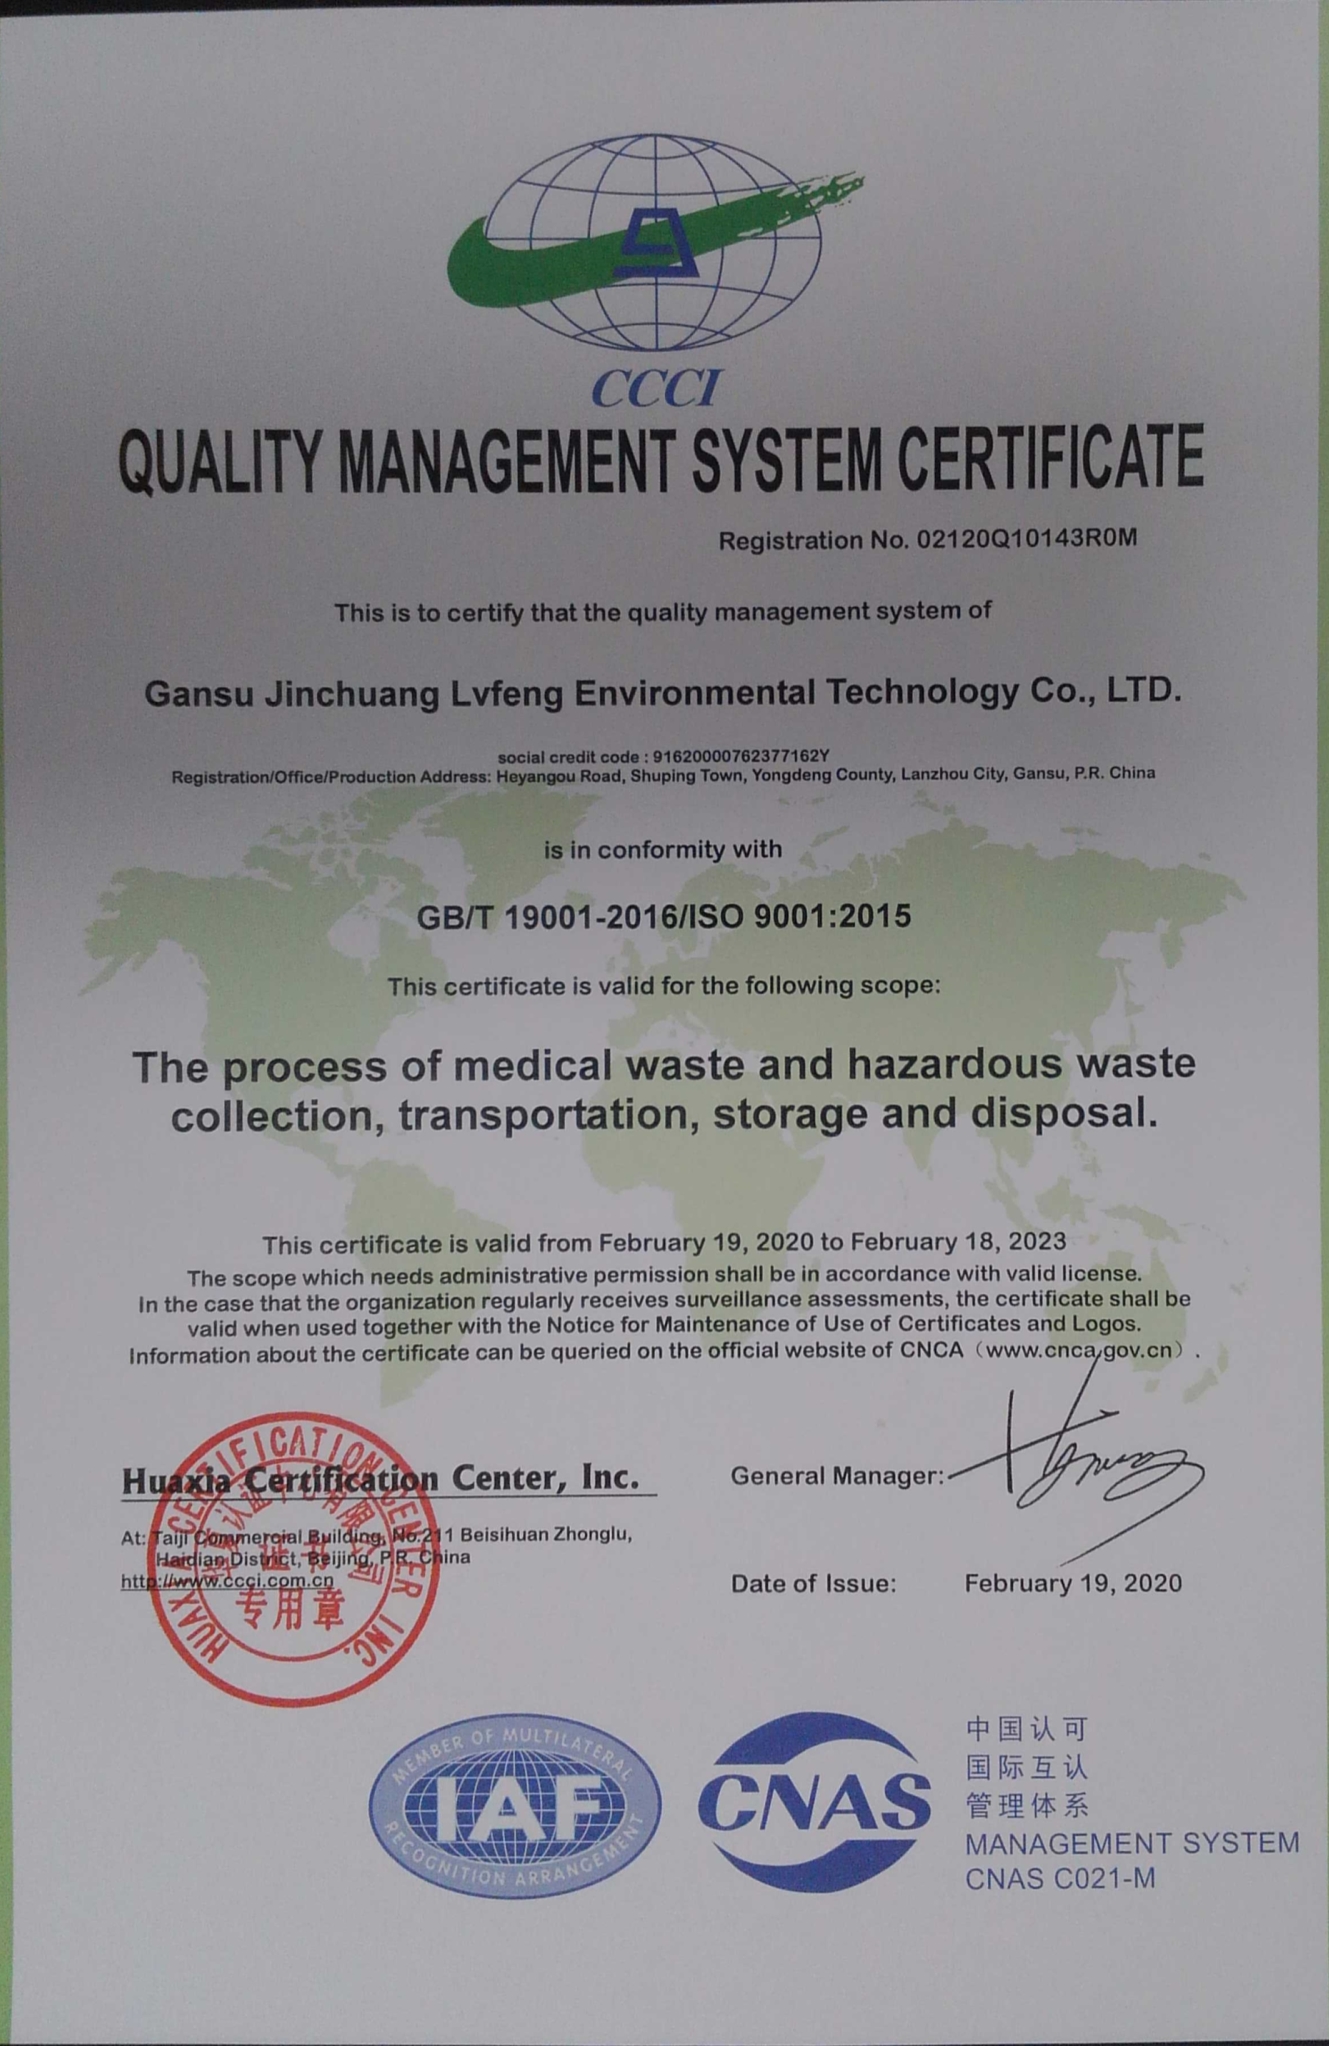 甘肃金创绿丰环境技术有限公司质量管理体系认证证书2_看图王.jpg